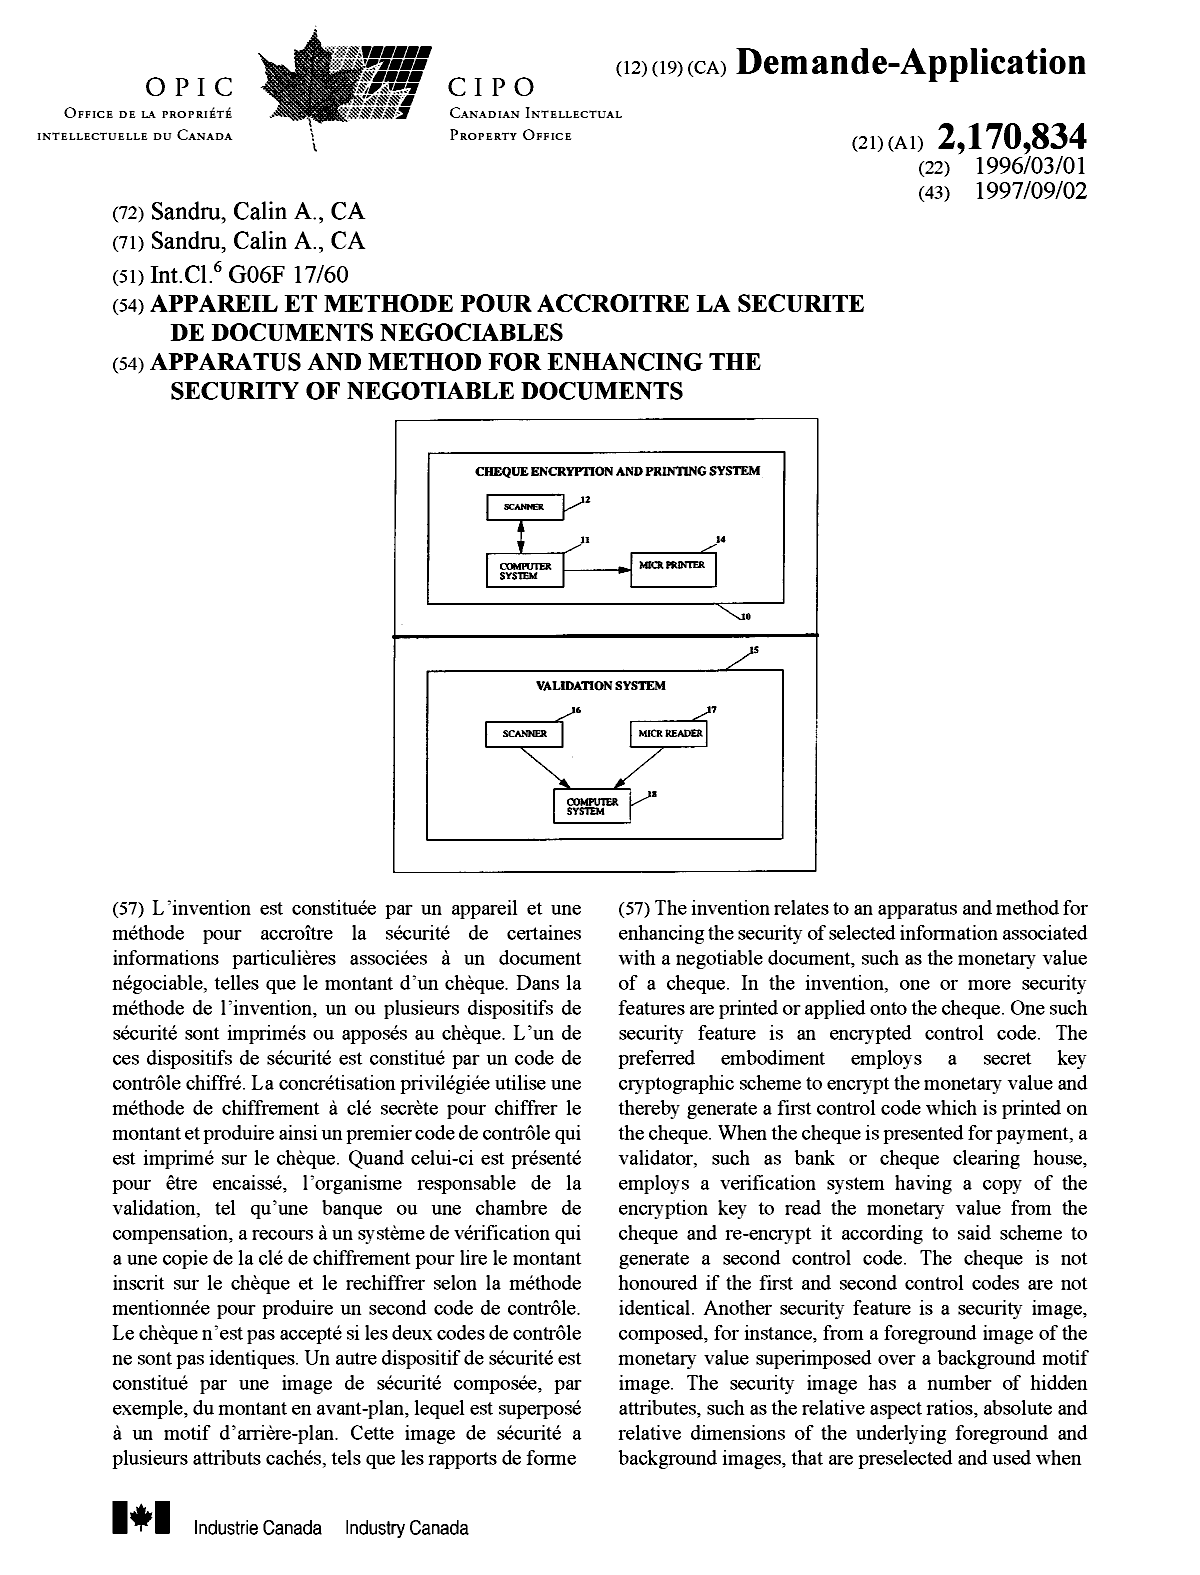 Document de brevet canadien 2170834. Page couverture 19991211. Image 1 de 2